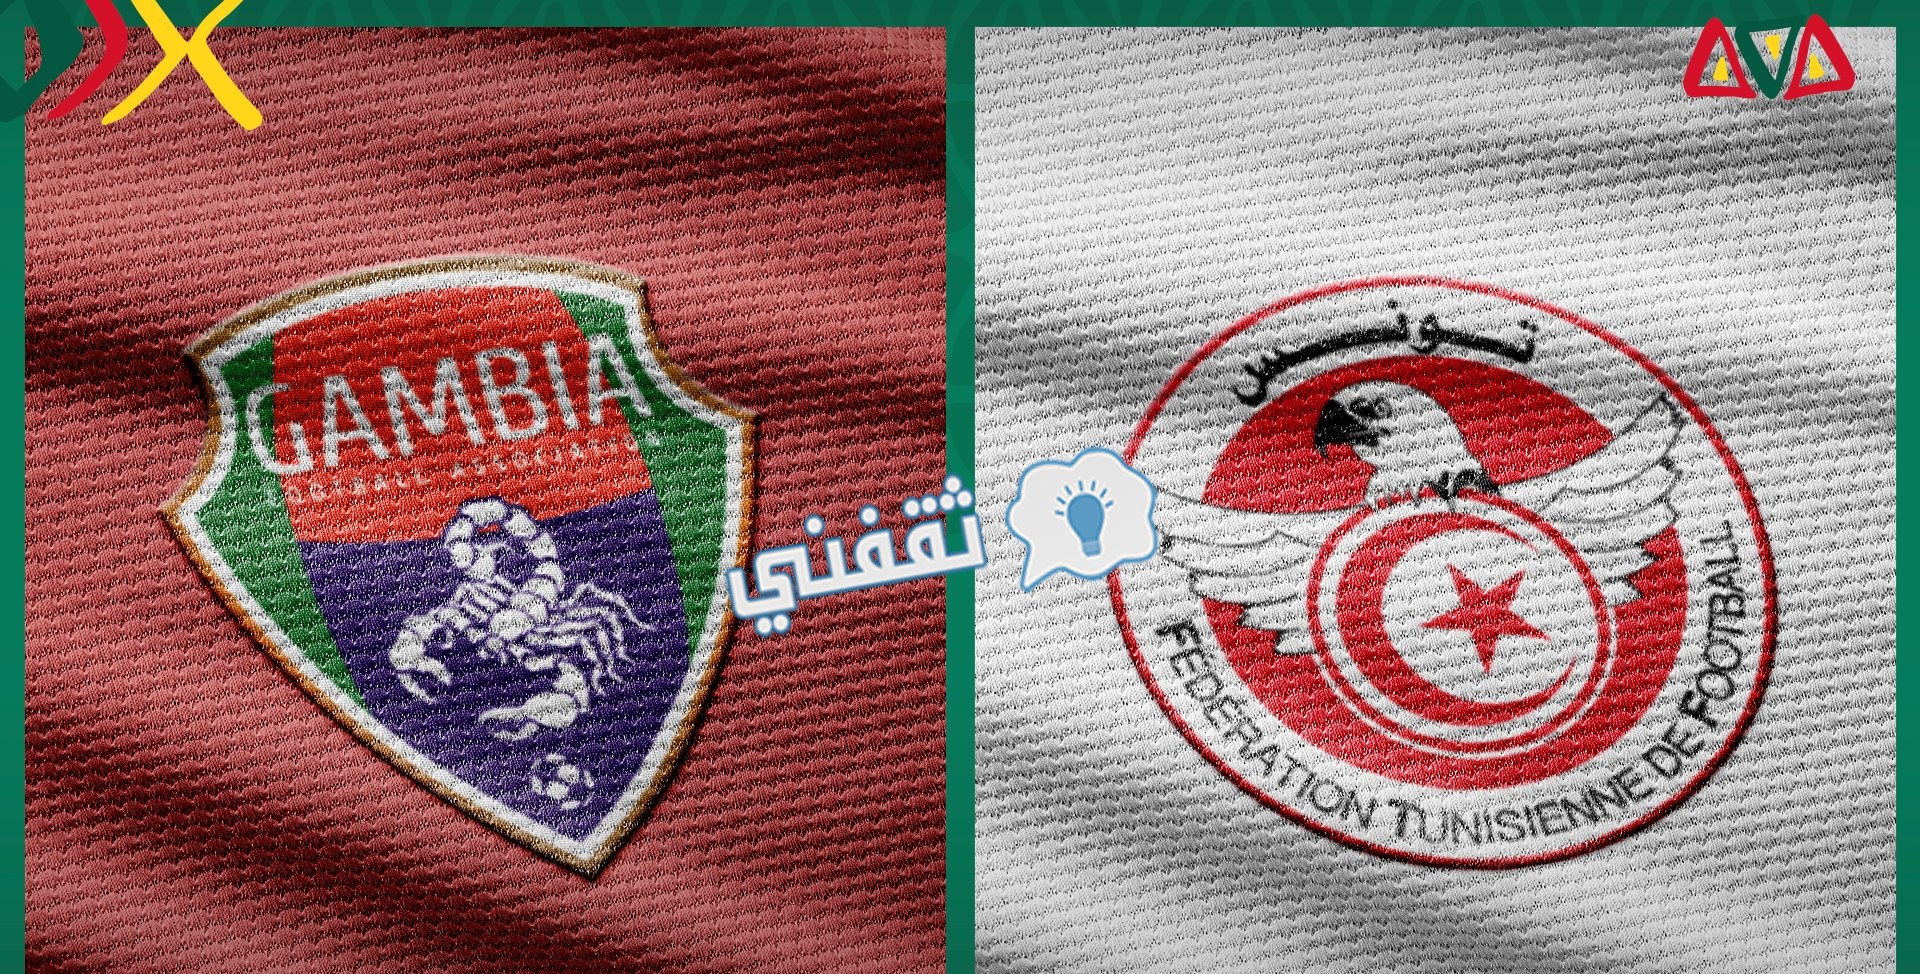 مباراة تونس وغامبيا